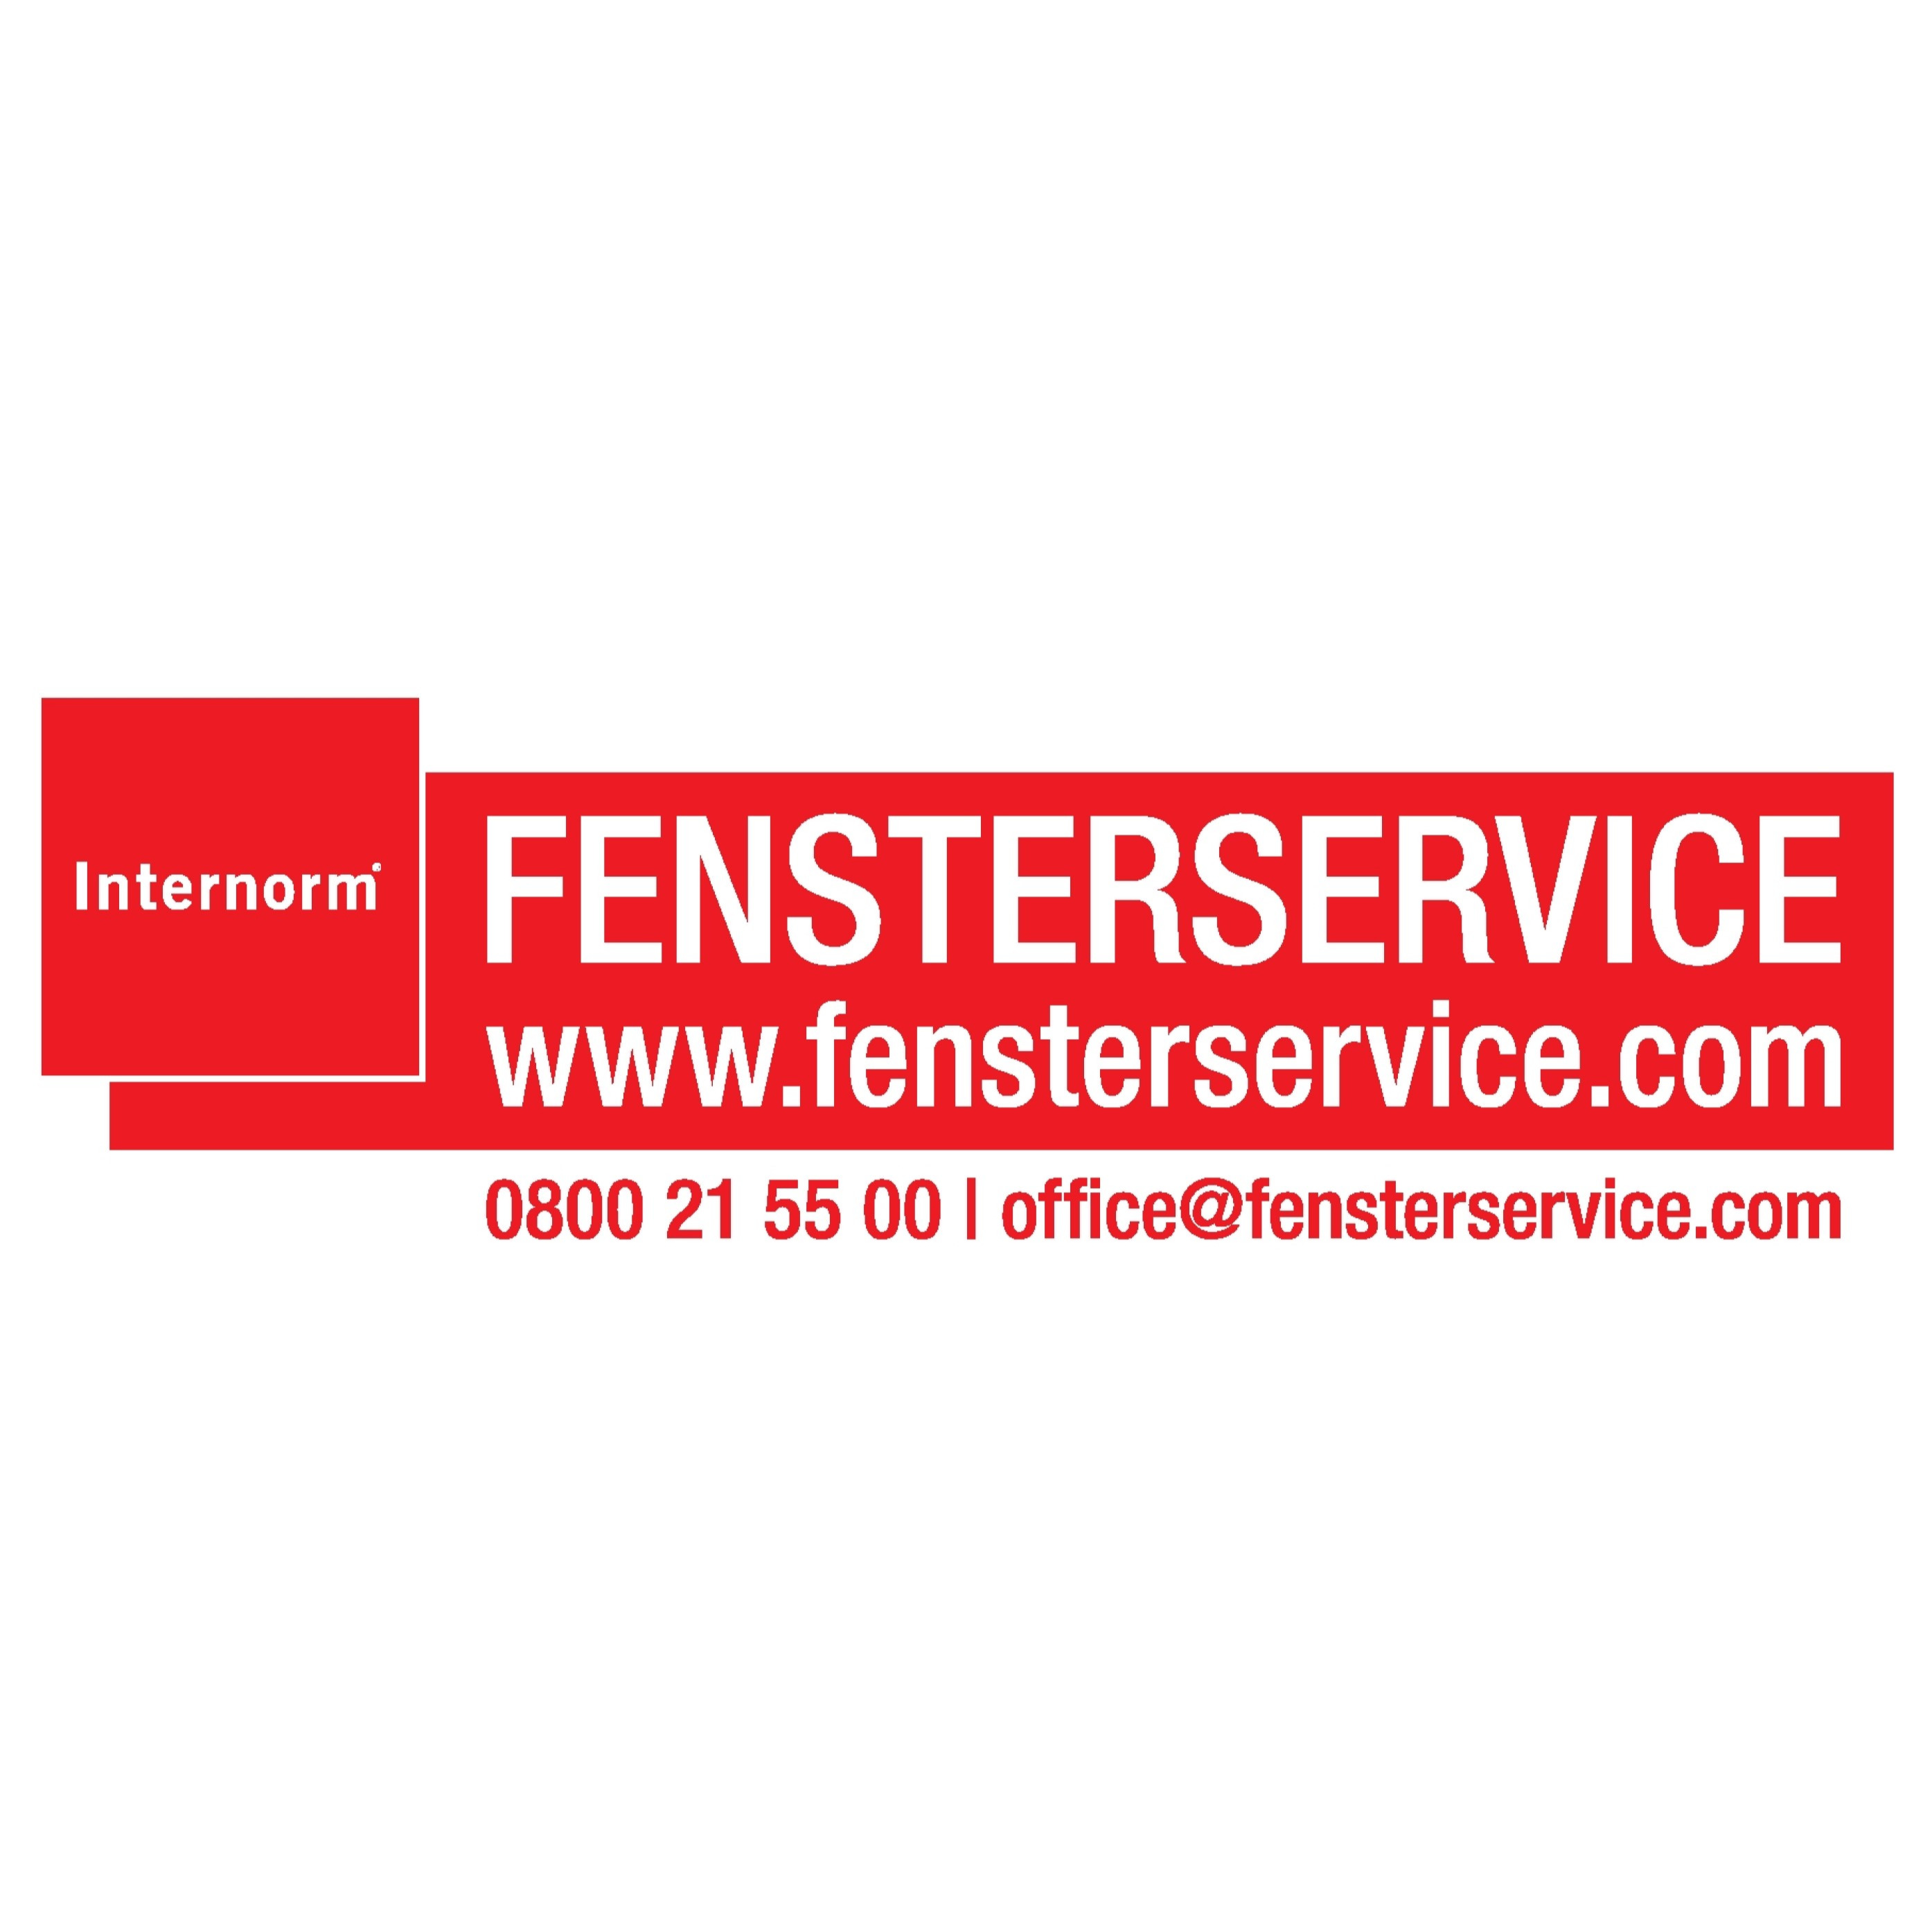 Internorm Fensterservice Logo